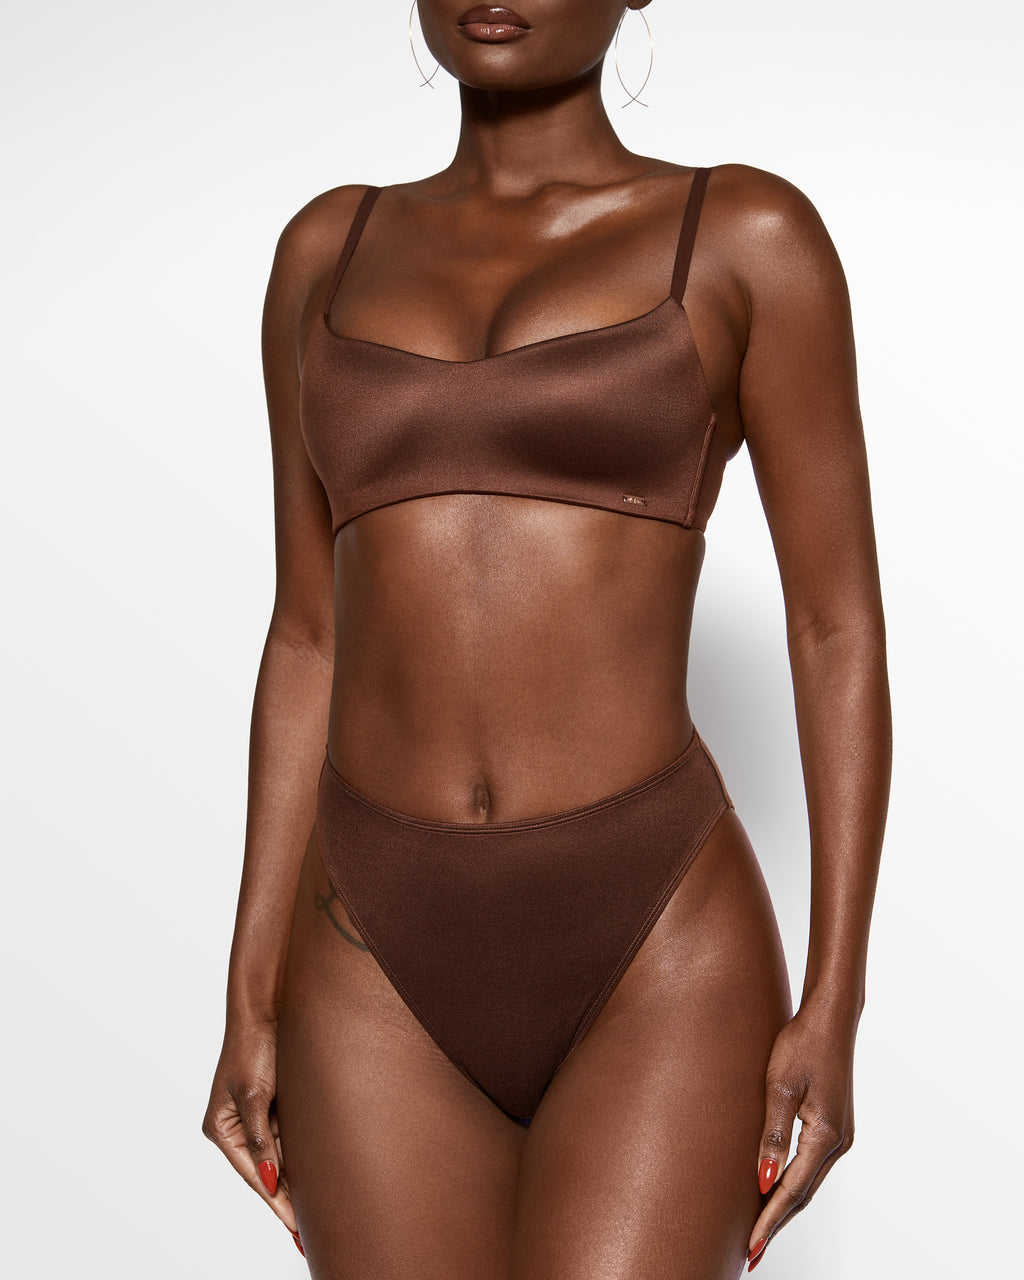 love-vera-soft-bra-high-waist-brief-panty-set-tshirt-bra-chocolate-brown